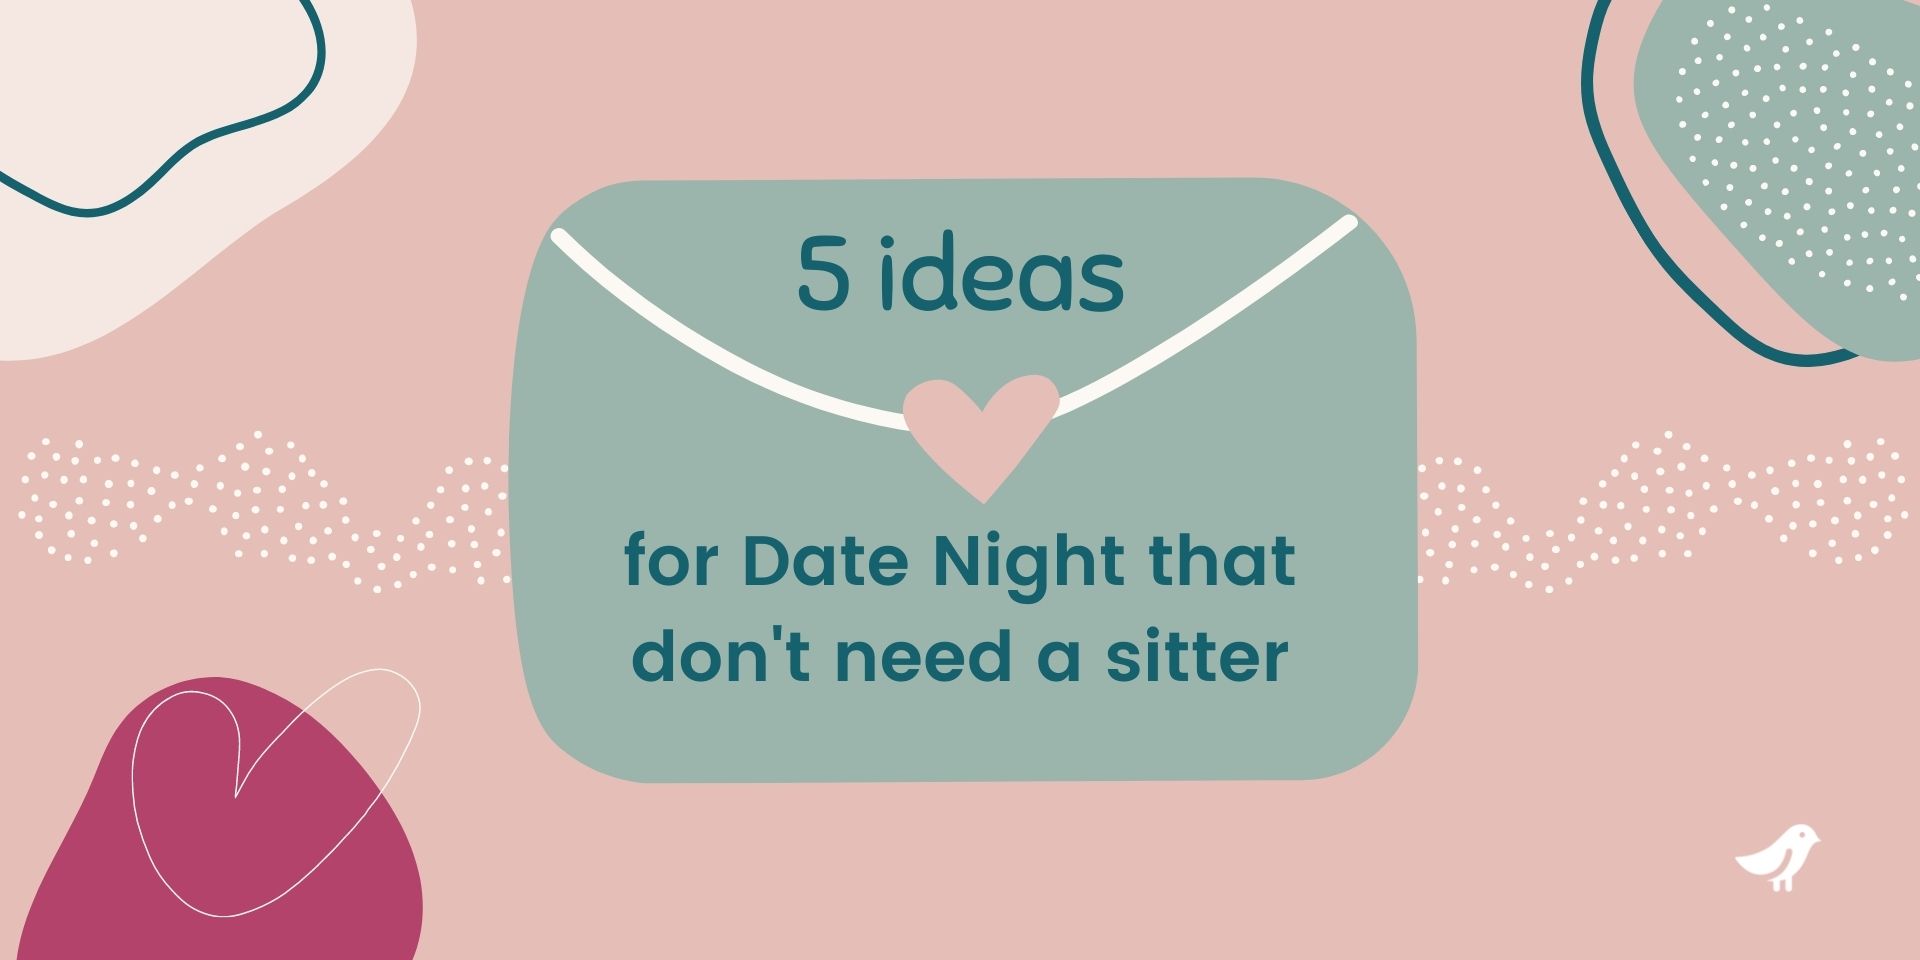 5 valentine's date ideas